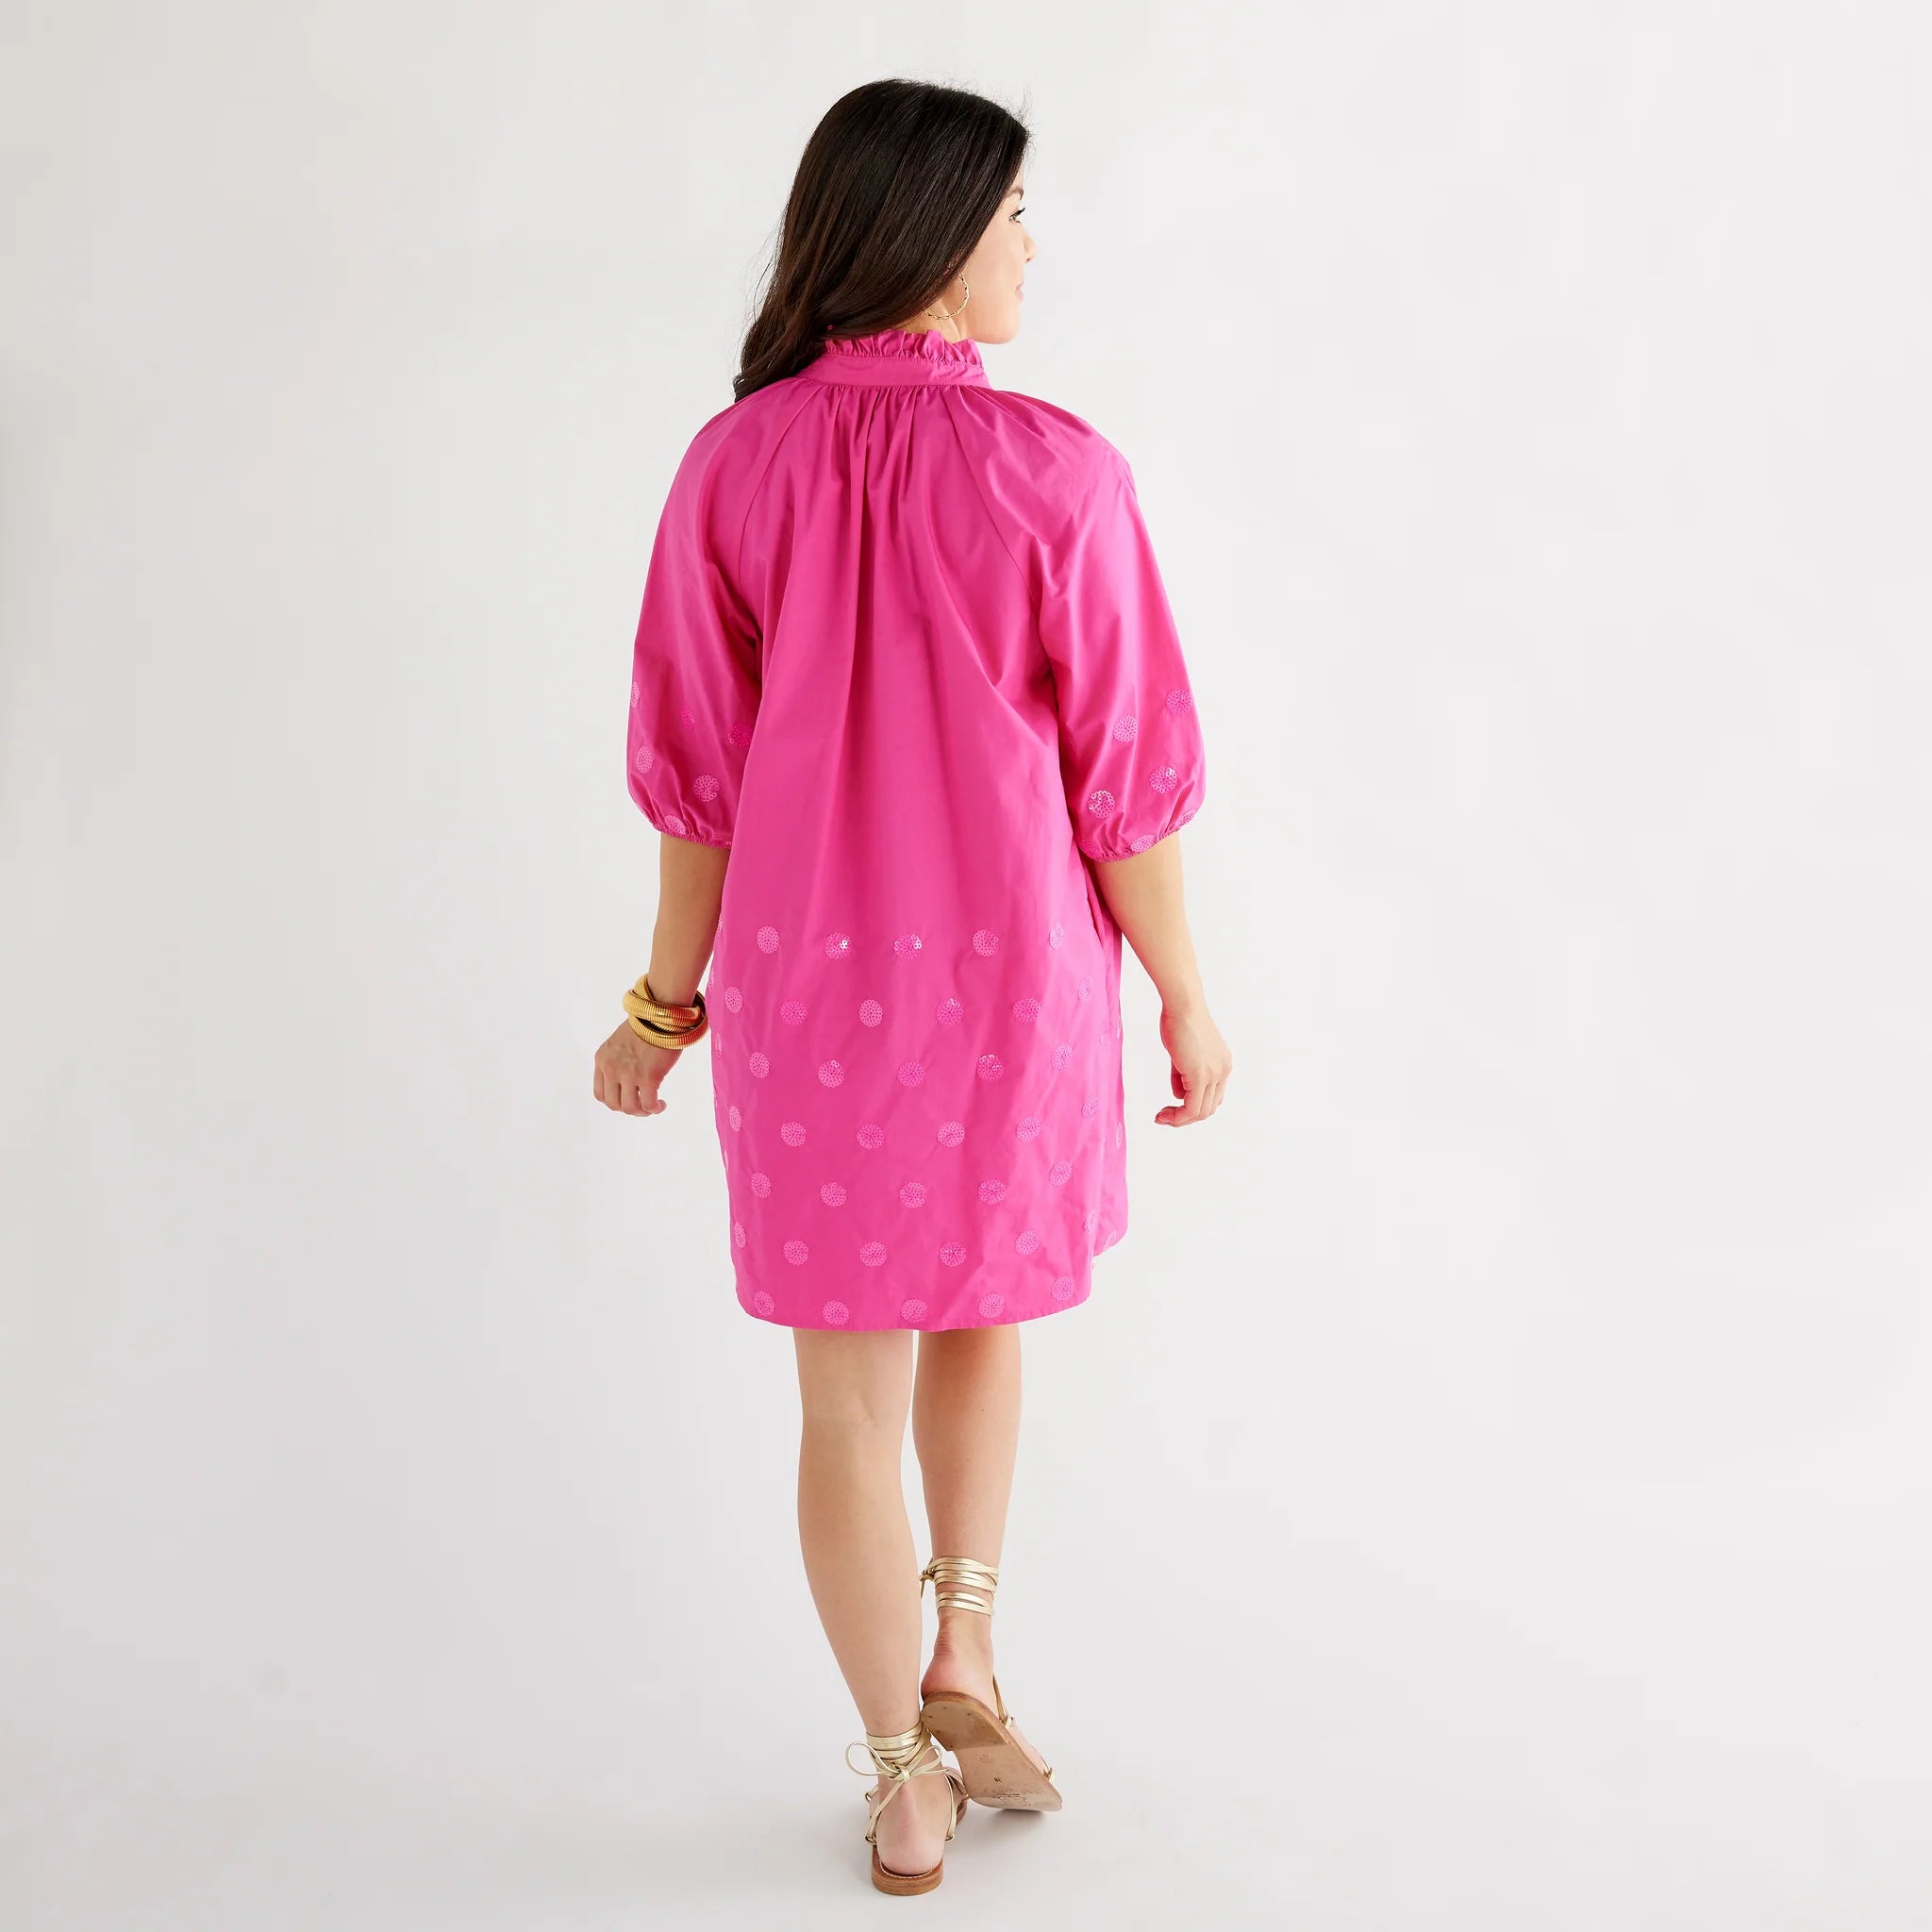 Celia Sequin Dress in Pink